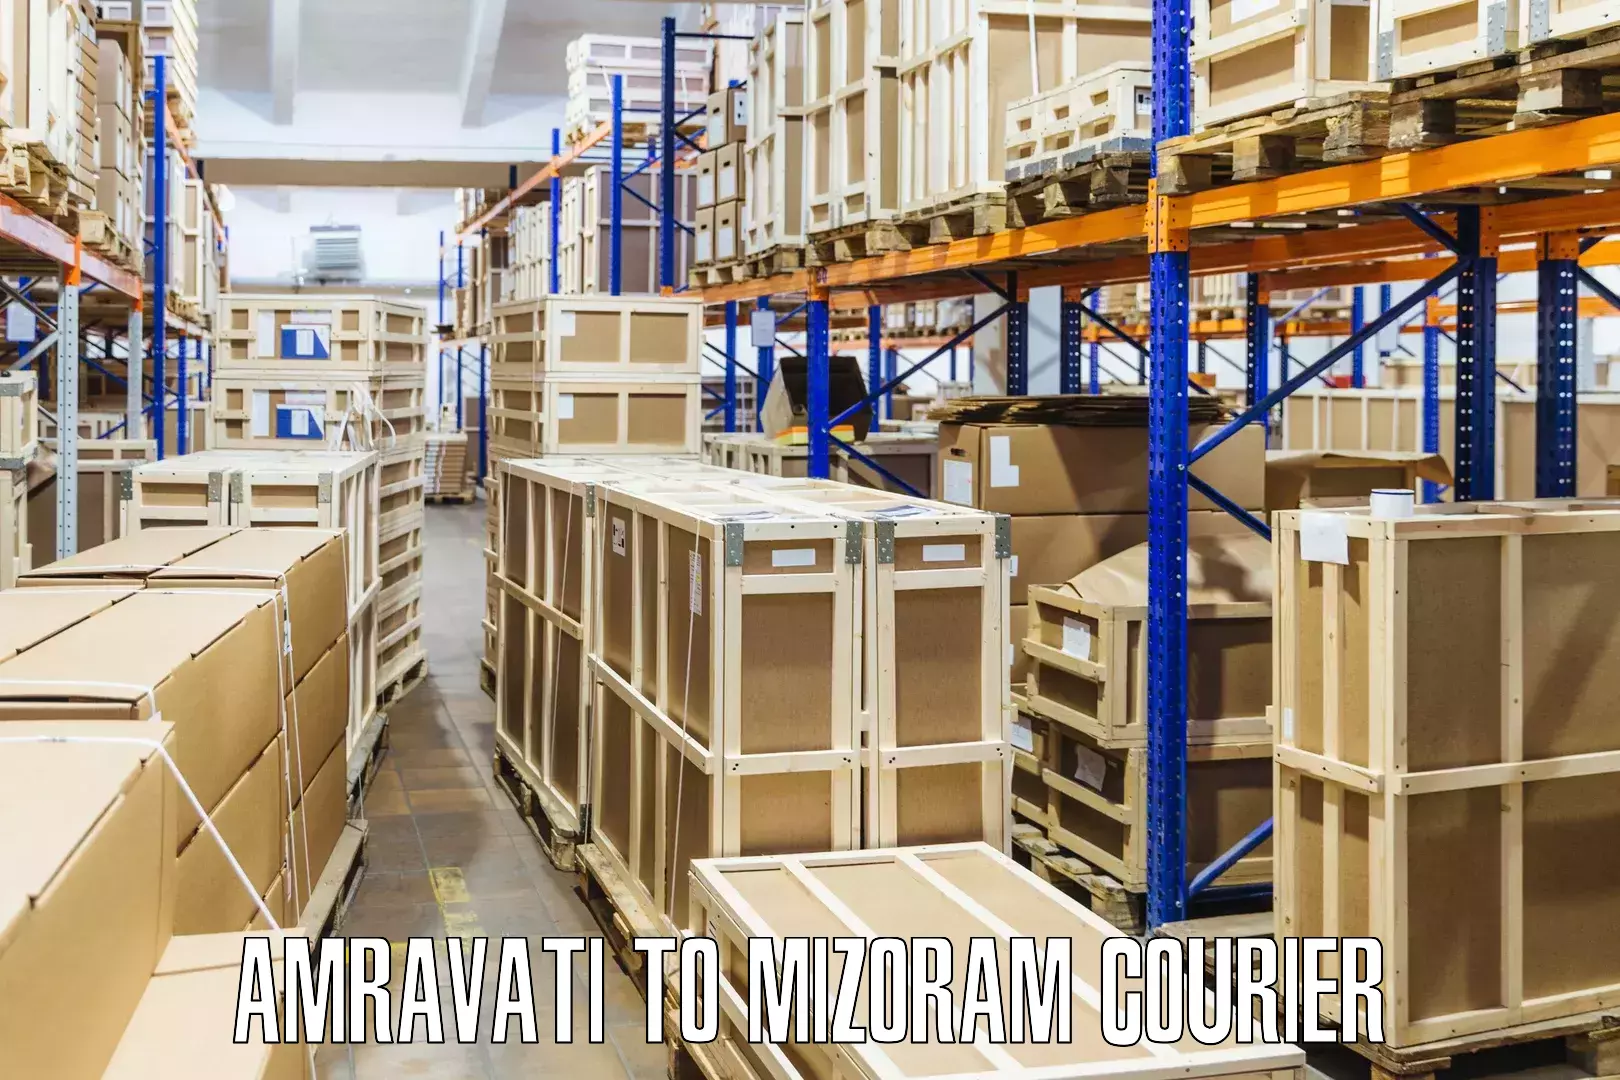 Efficient parcel service Amravati to Khawzawl